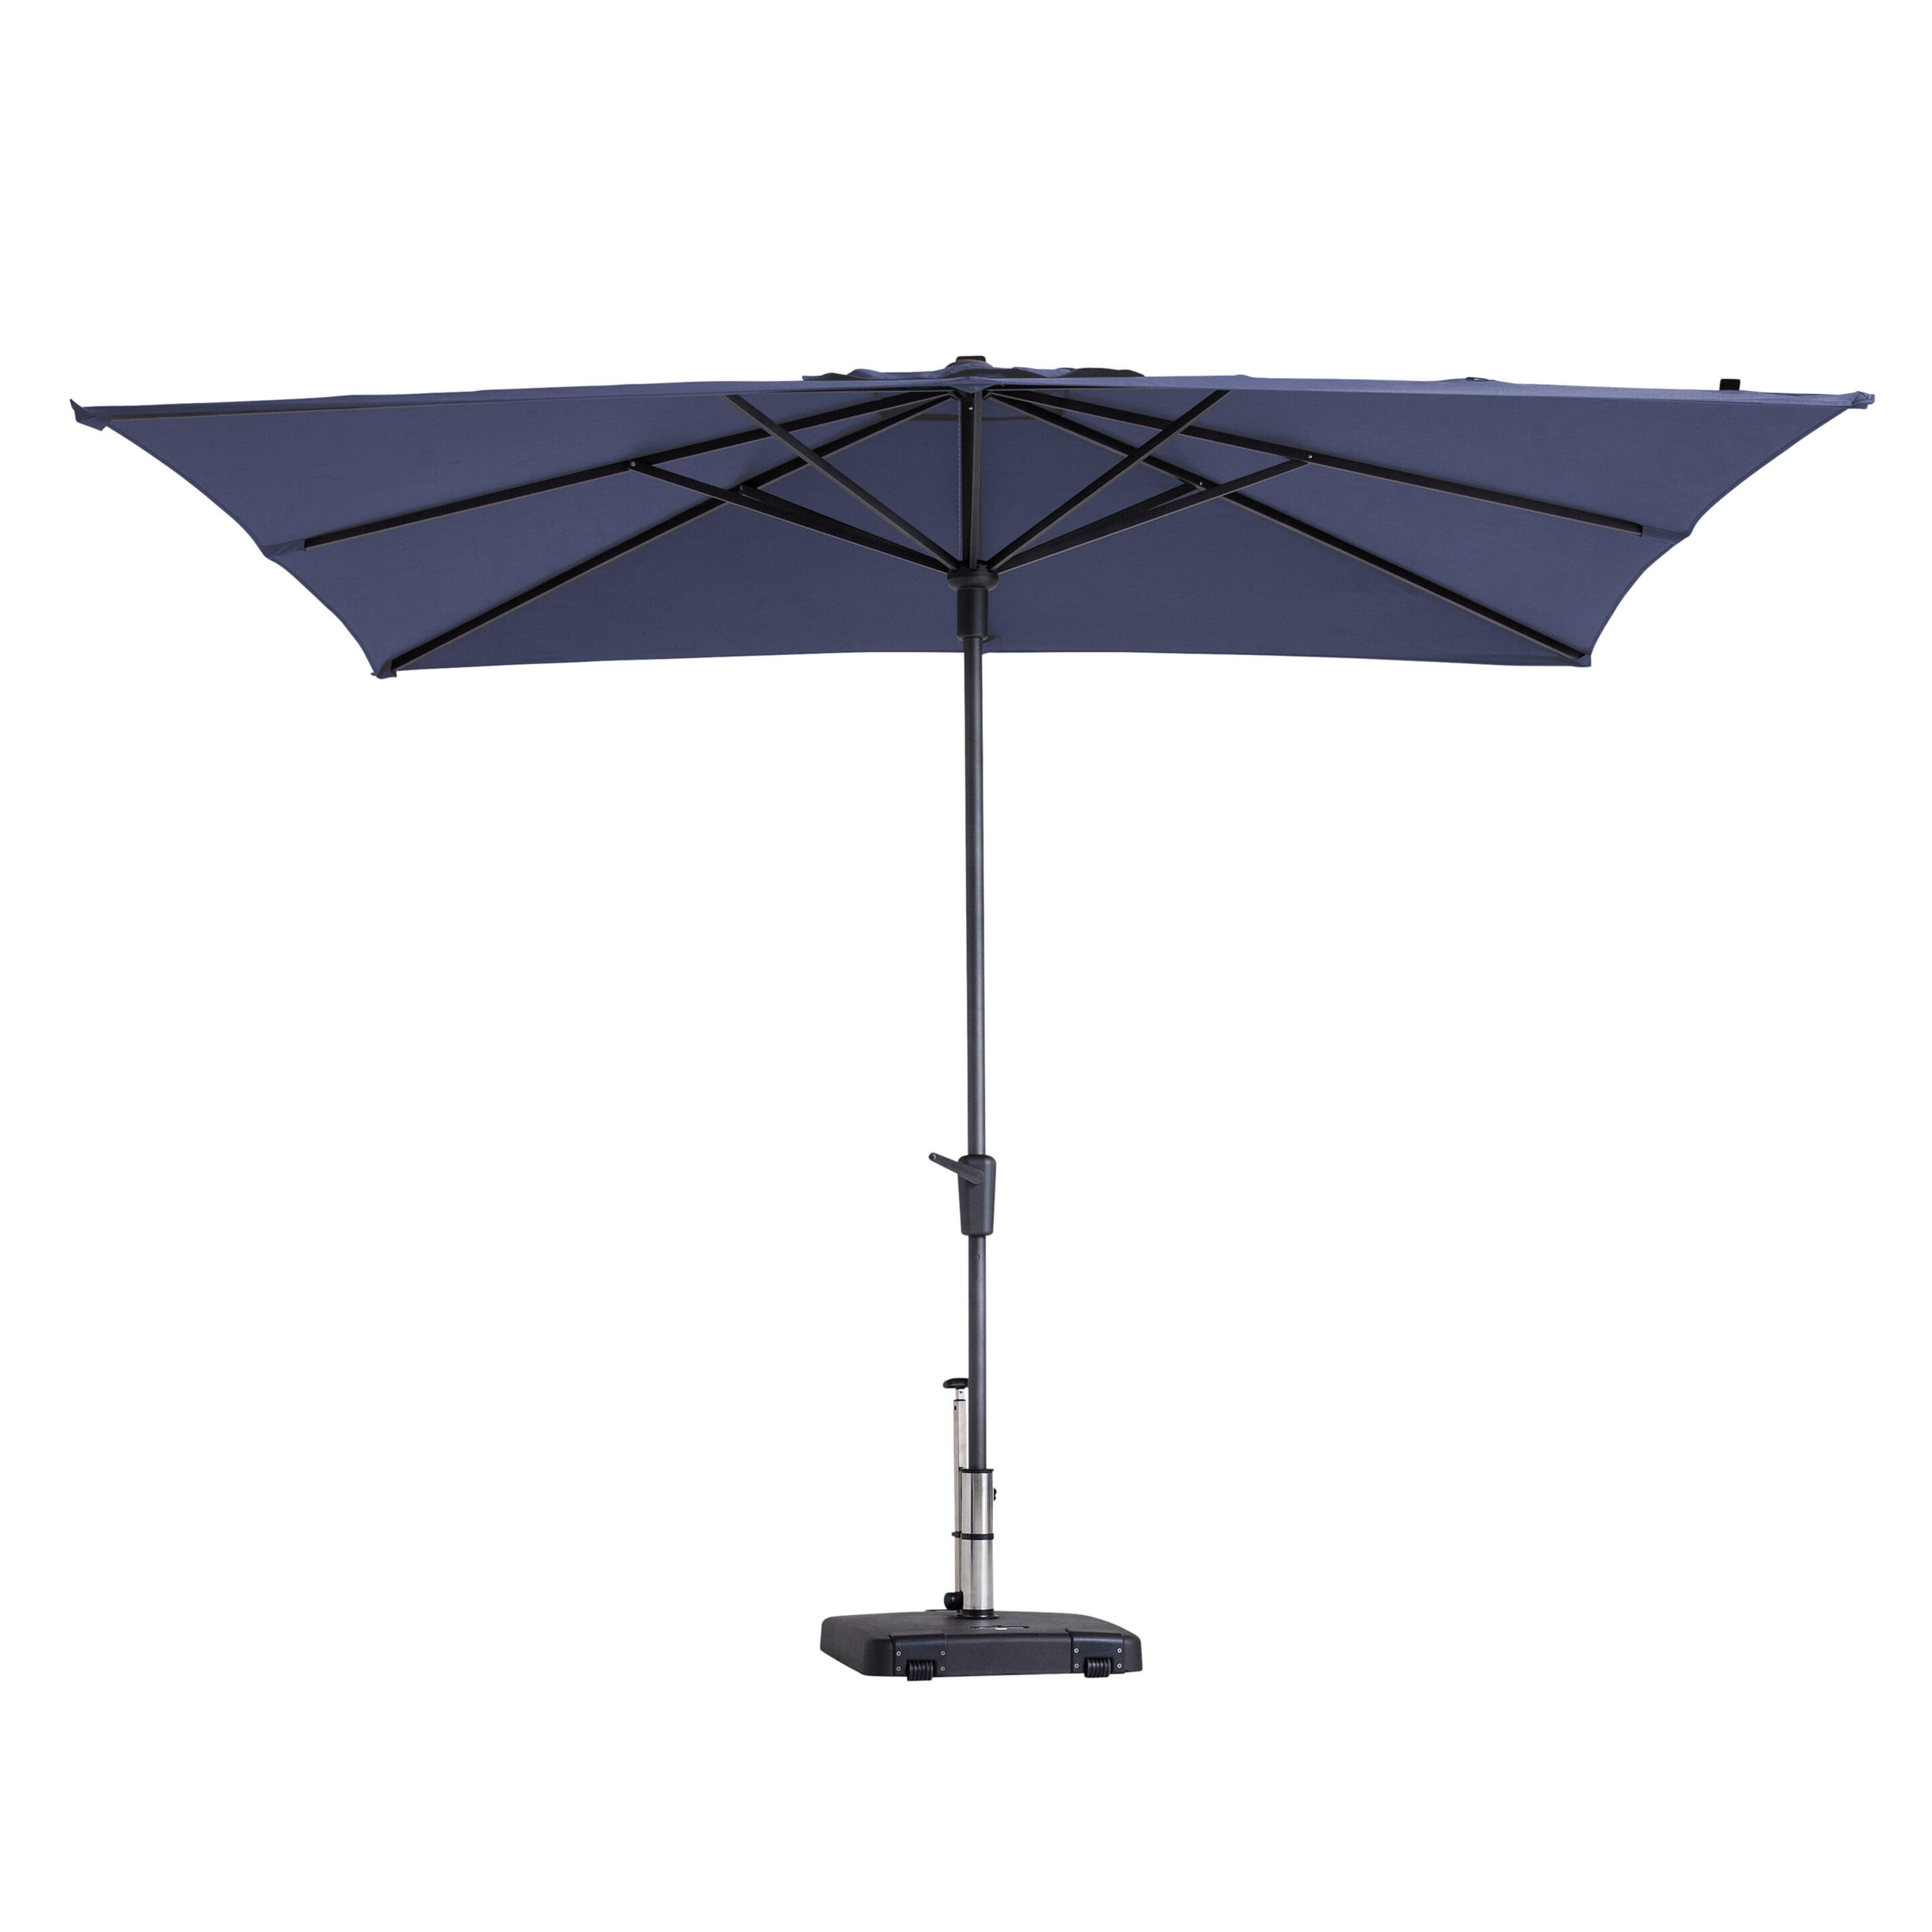 Waterproof market umbrella